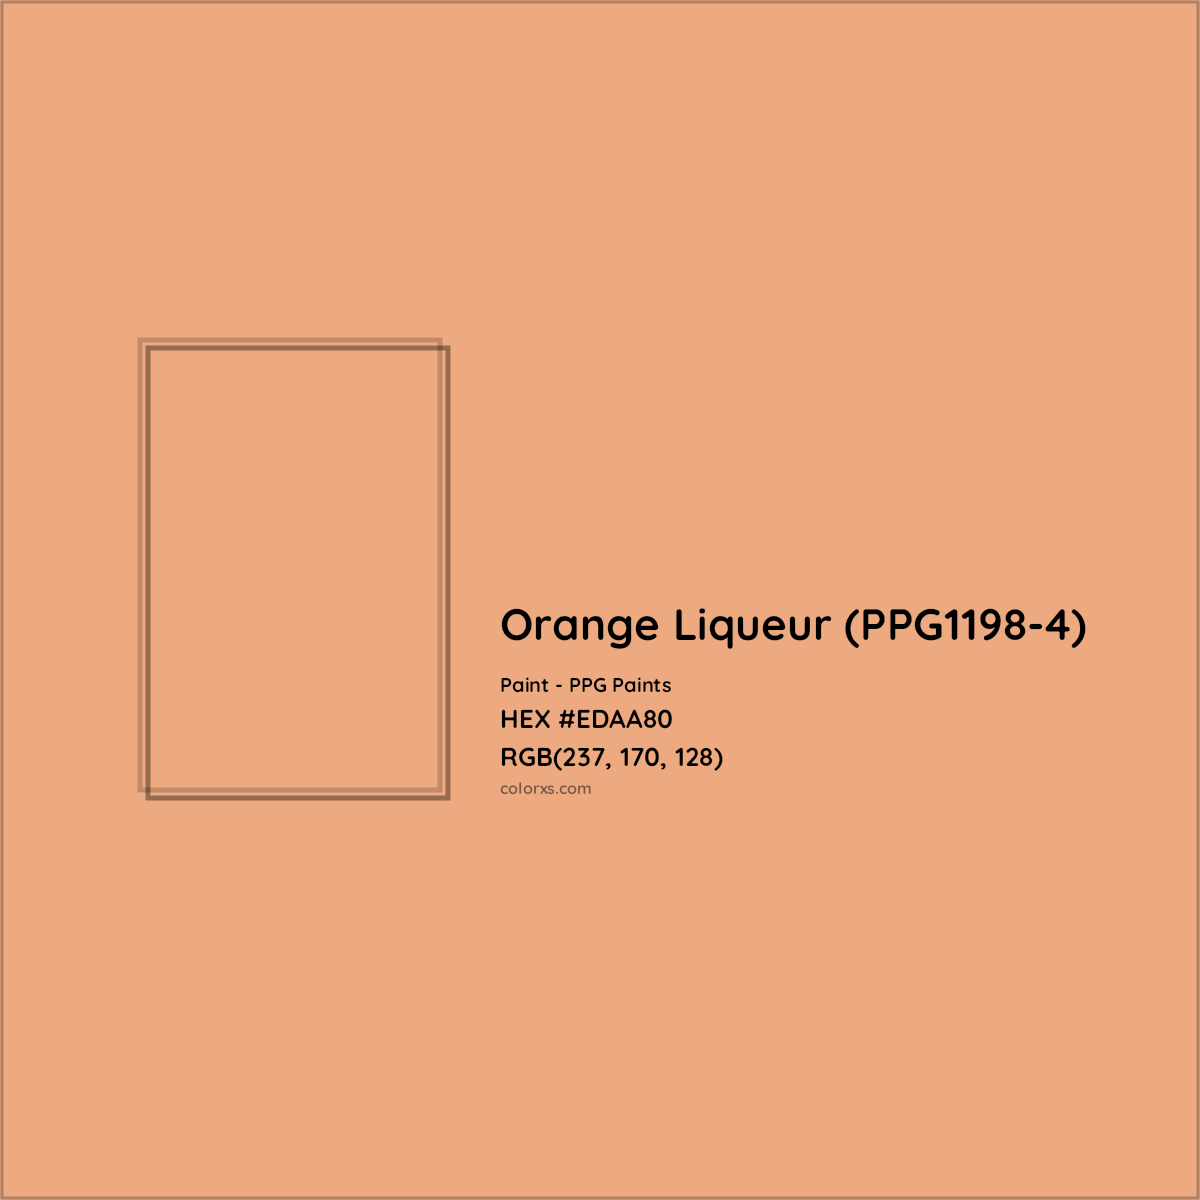 HEX #EDAA80 Orange Liqueur (PPG1198-4) Paint PPG Paints - Color Code